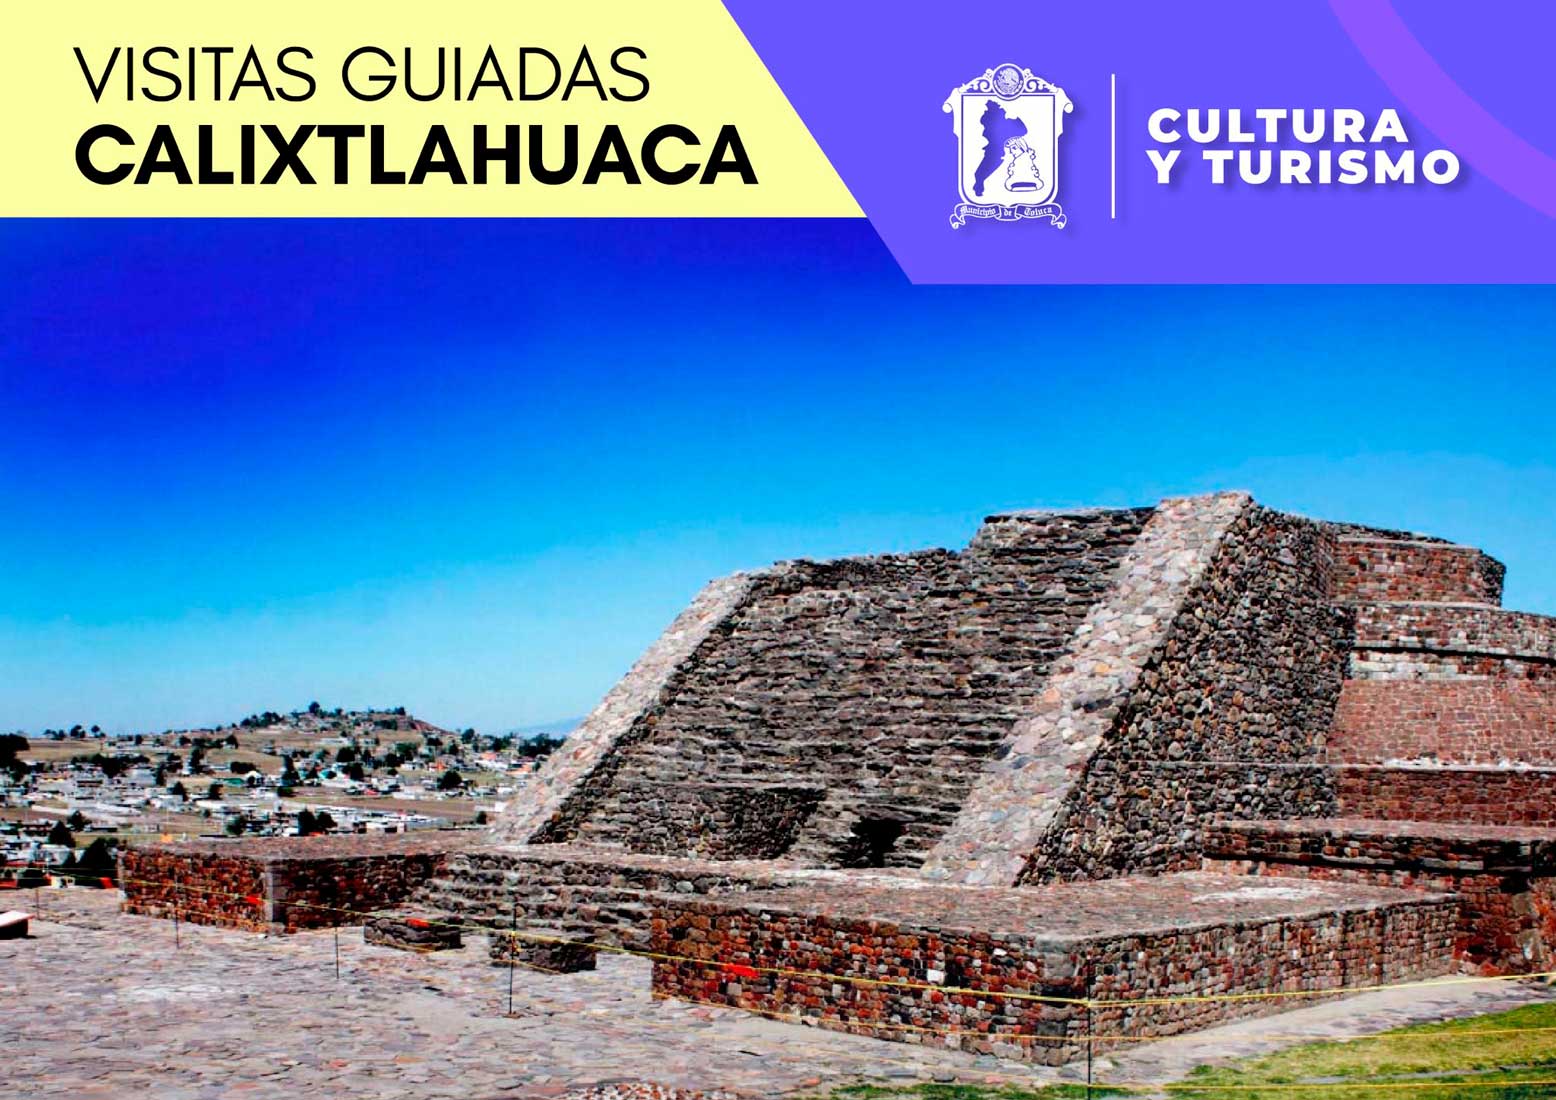 Descubre la historia de Calixtlahuaca ¡Asiste a las visitas guiadas!